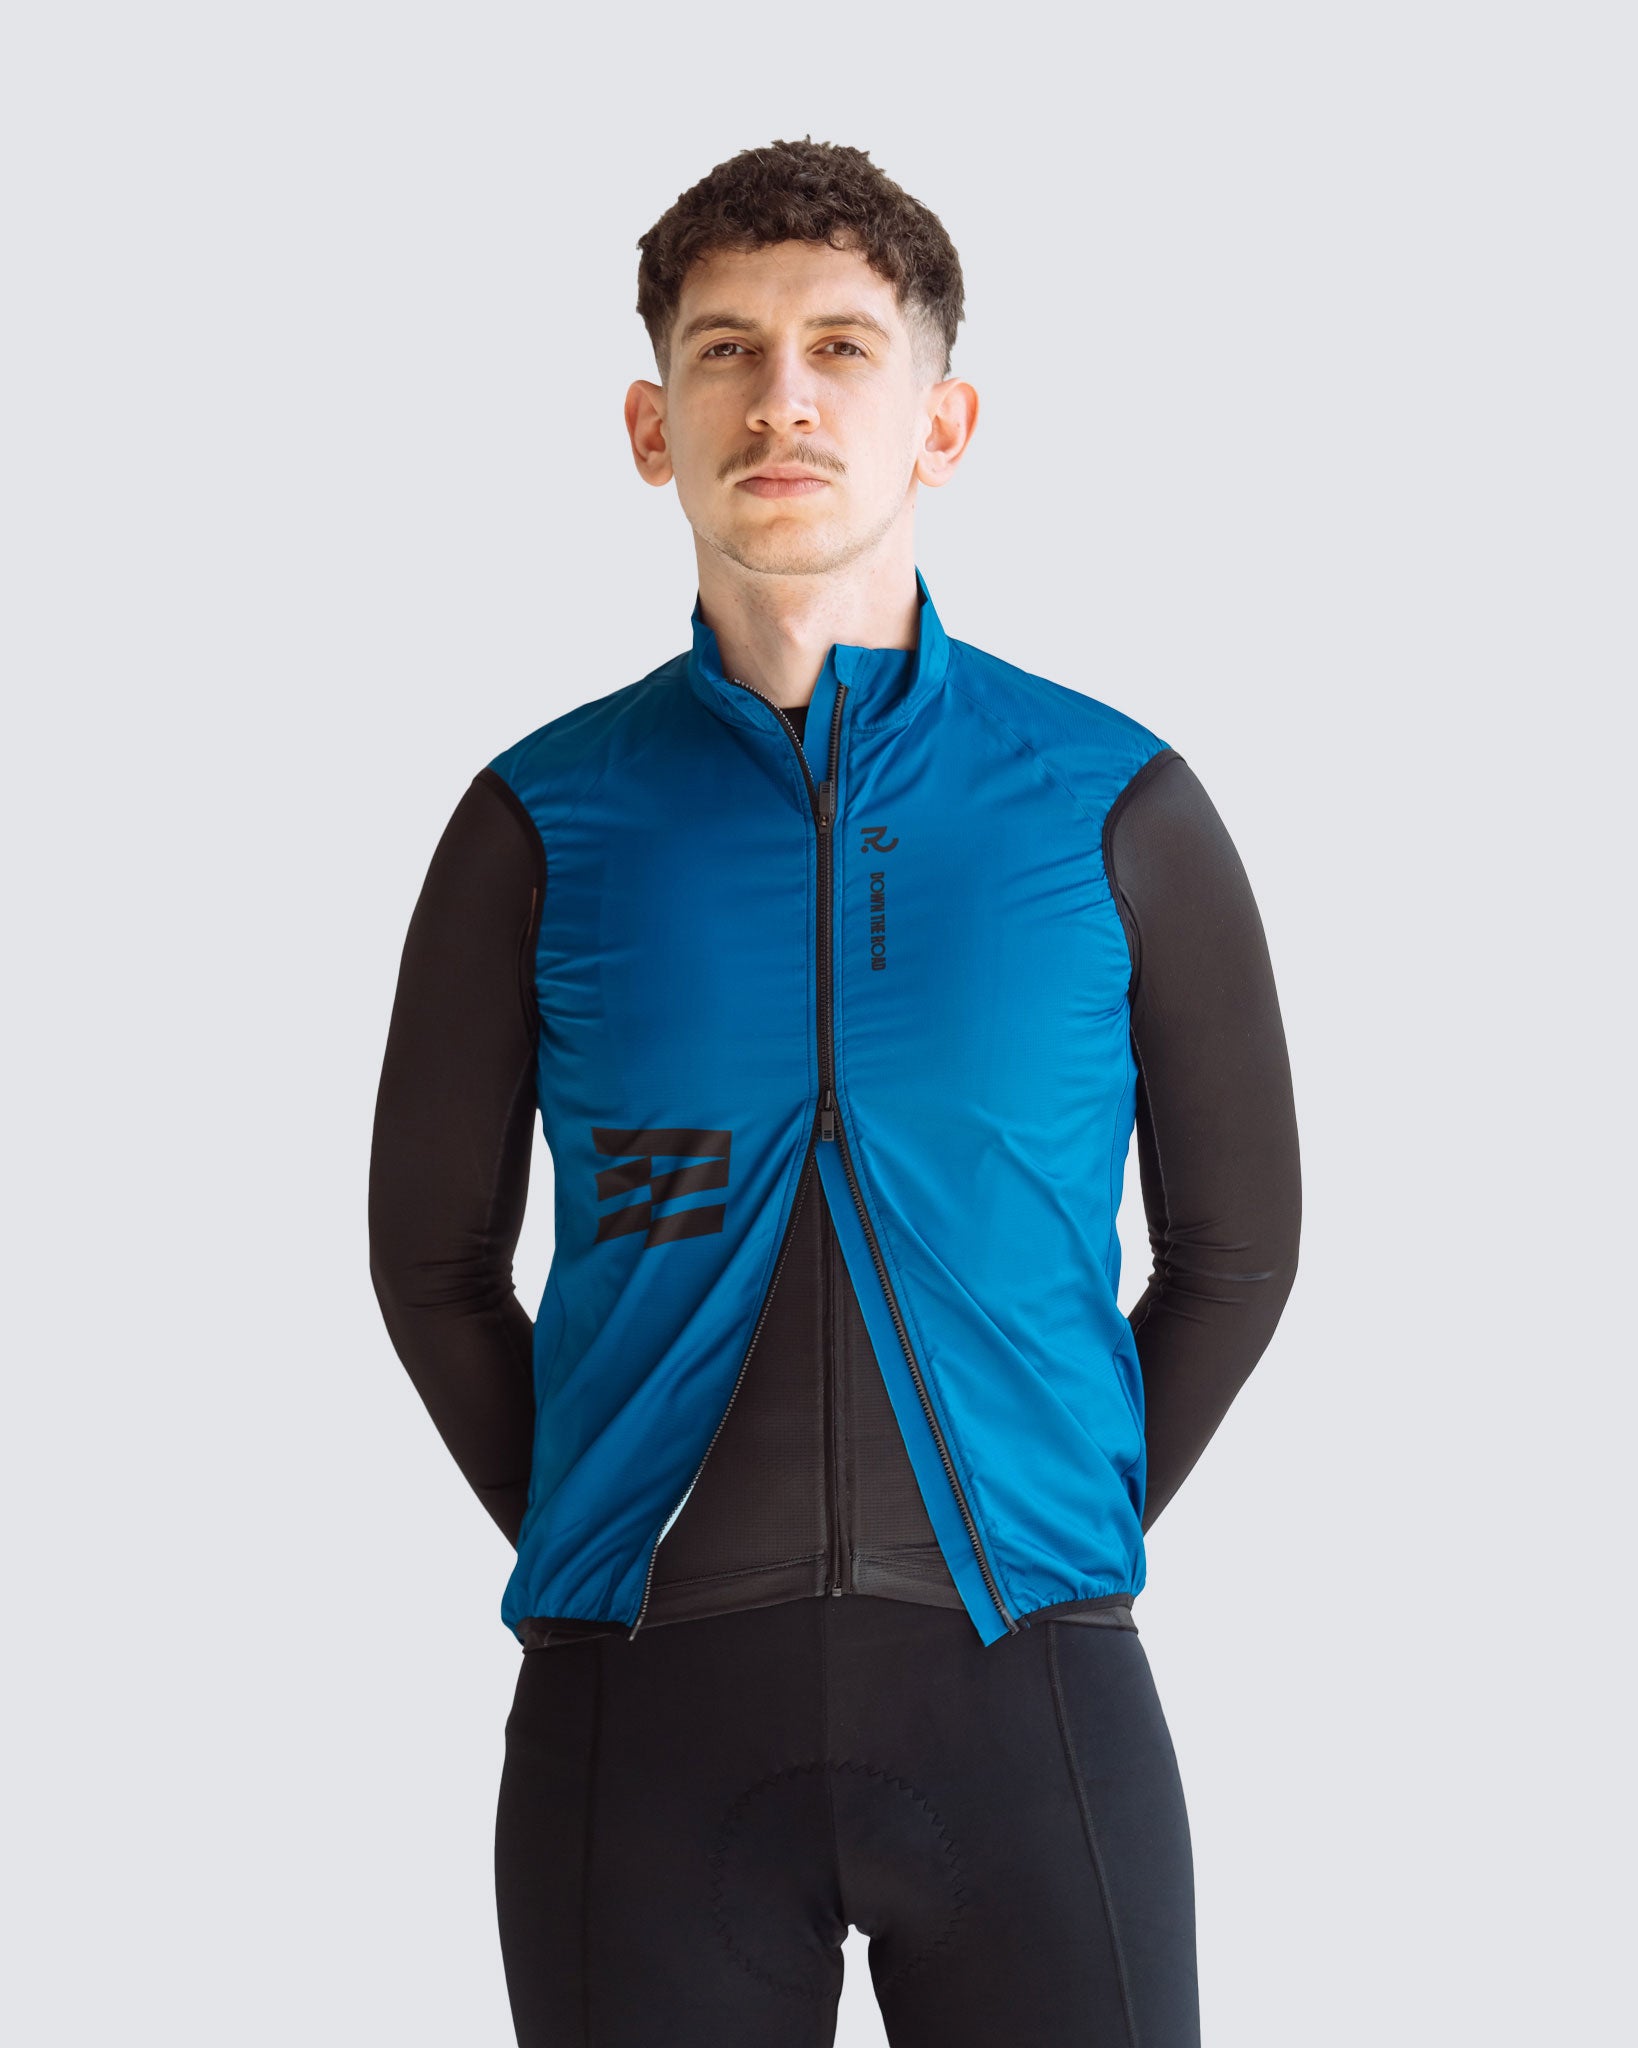 Wavy teal men cycling vest two ways zipper open